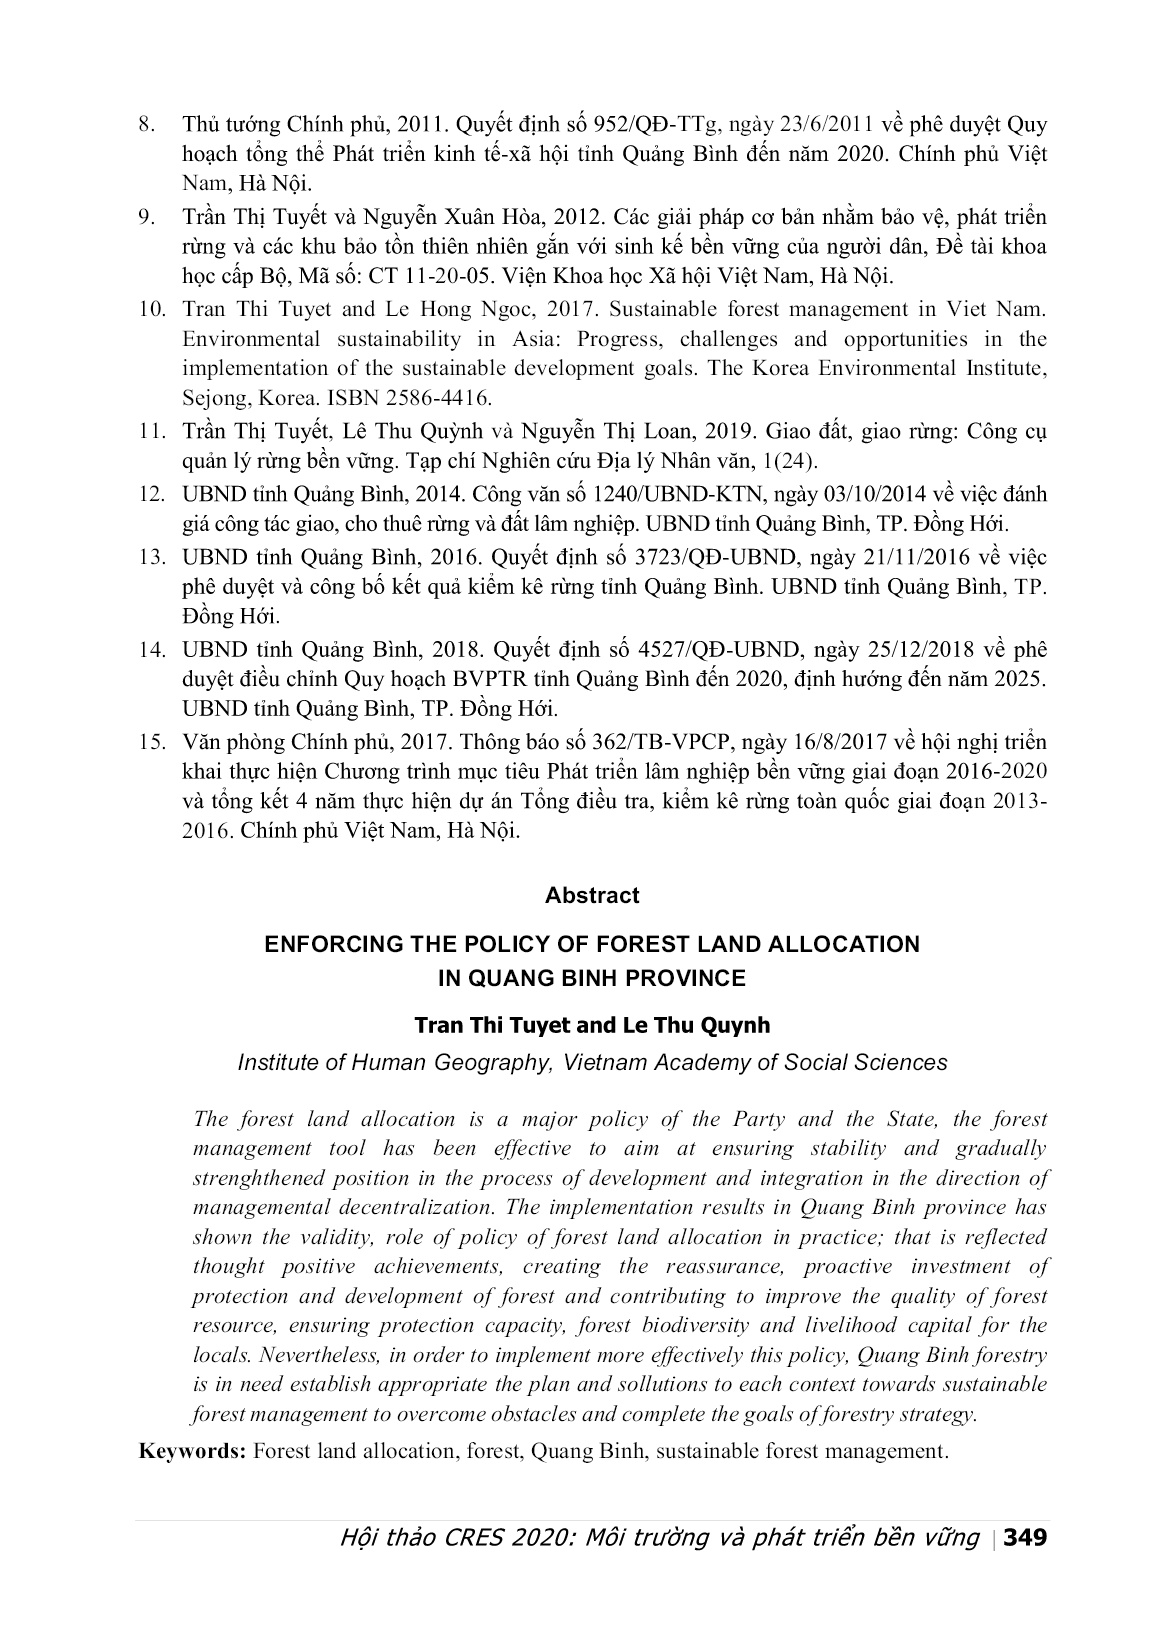 Triển khai chính sách giao đất giao rừng ở tỉnh Quảng Bình trang 9